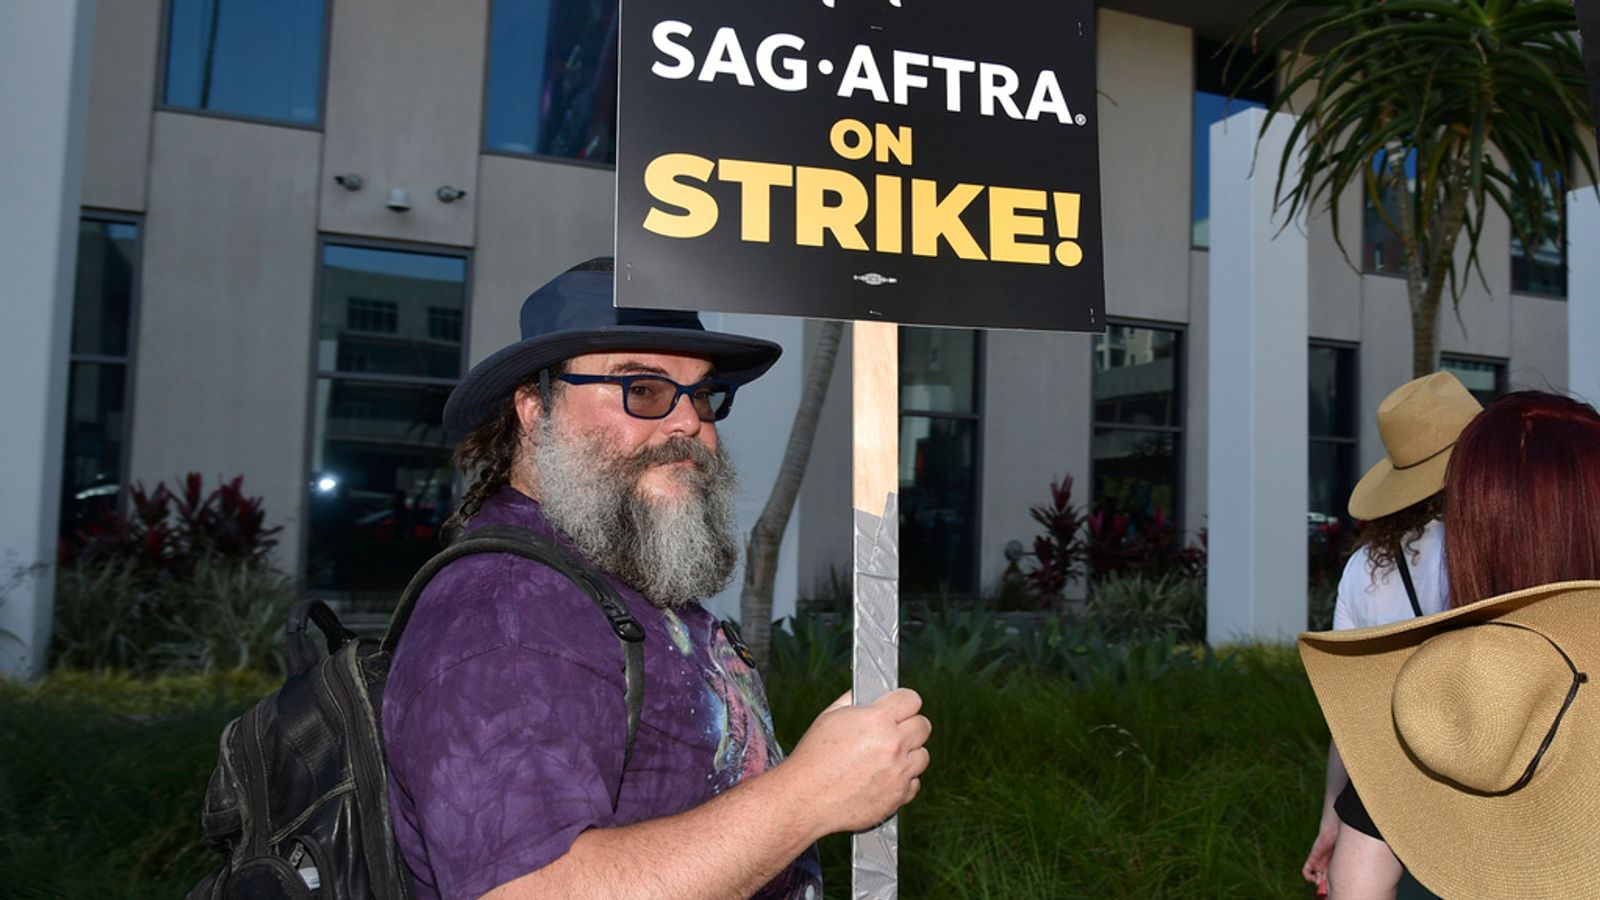 Синдикатът на американските актьори SAG-AFTRA приветства „огромната победа“, тъй като ратифицира споразумението, сложило край на стачката